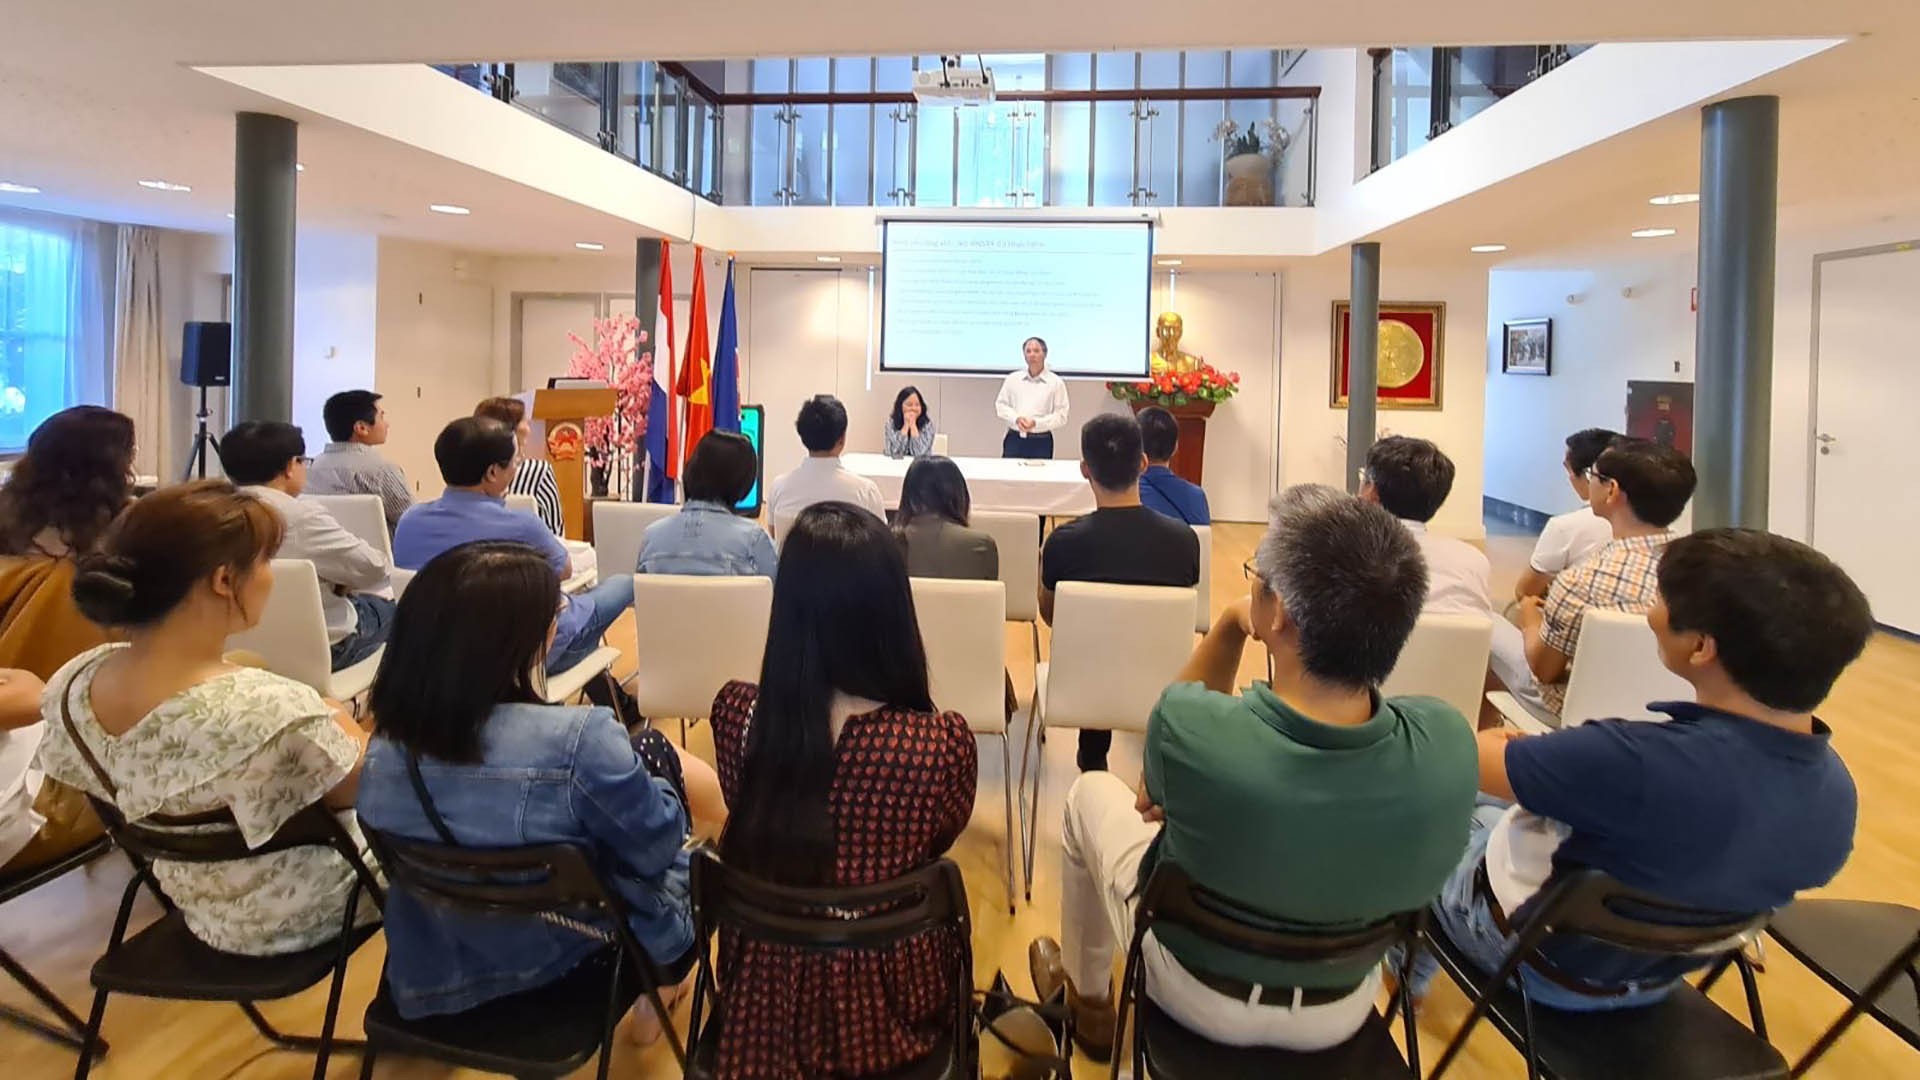 Đại sứ Phạm Việt Anh phát biểu tại sự kiện.